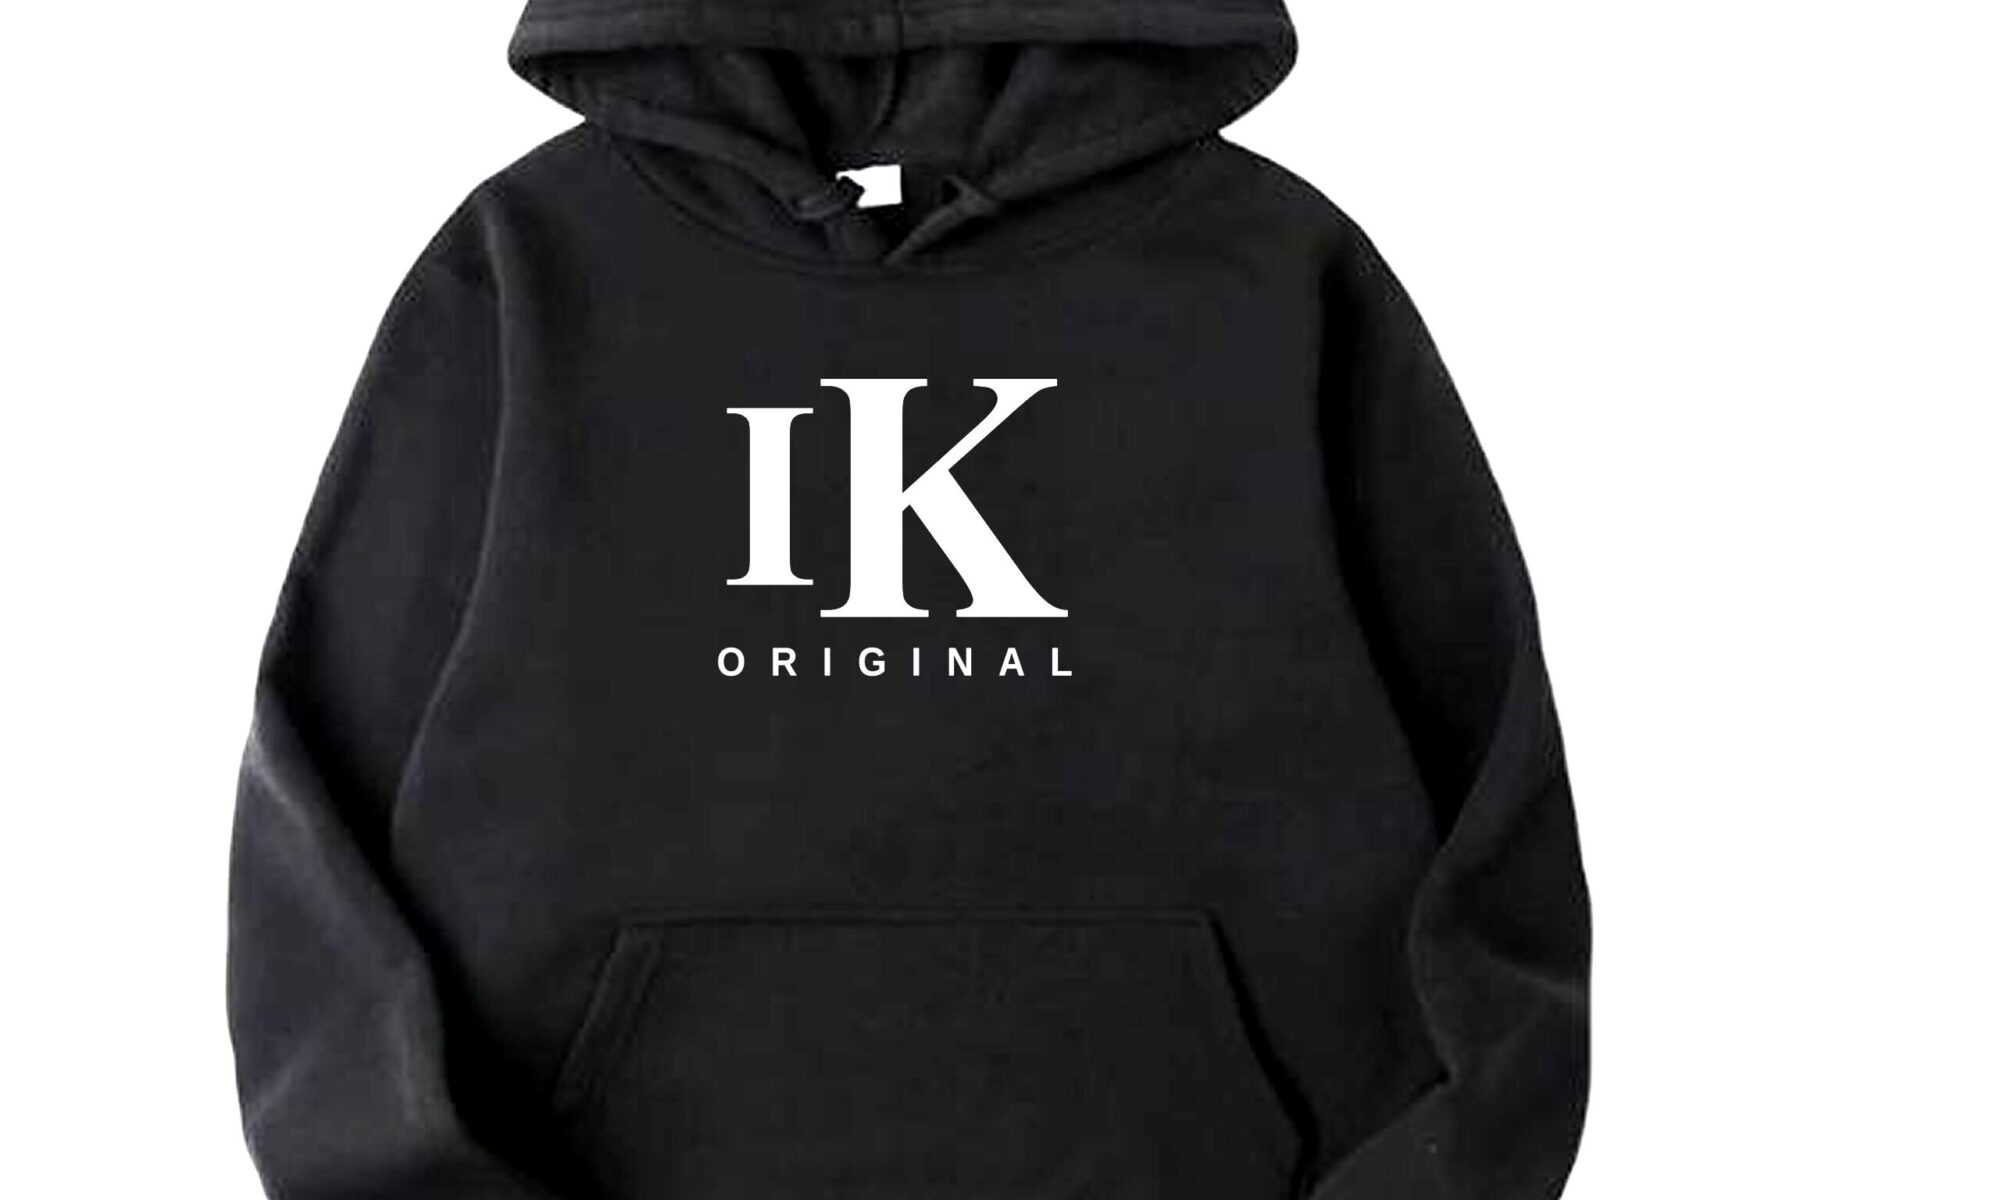 IK Original - Black Hoodies